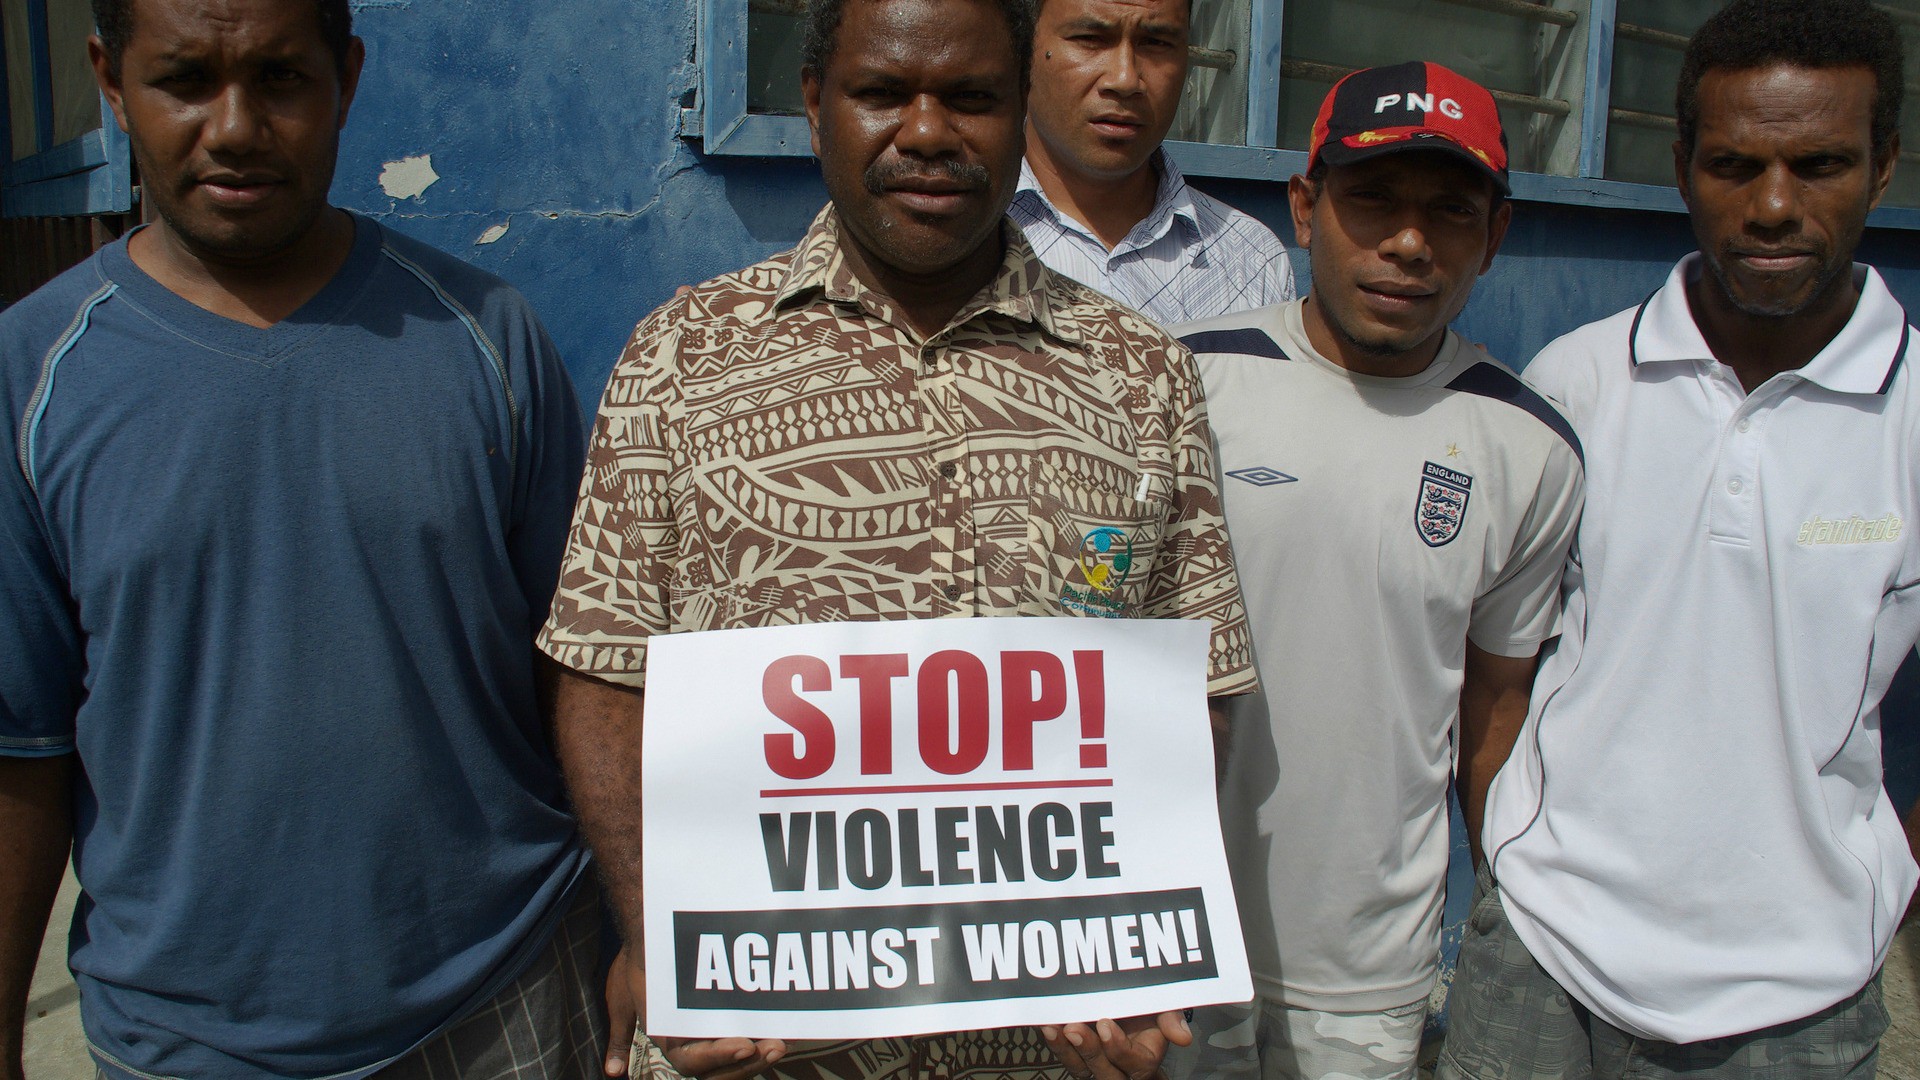 Les violences contre les femmes augmentent dans le monde (Photo: Australian Government/Flickr/CC BY 2.0)